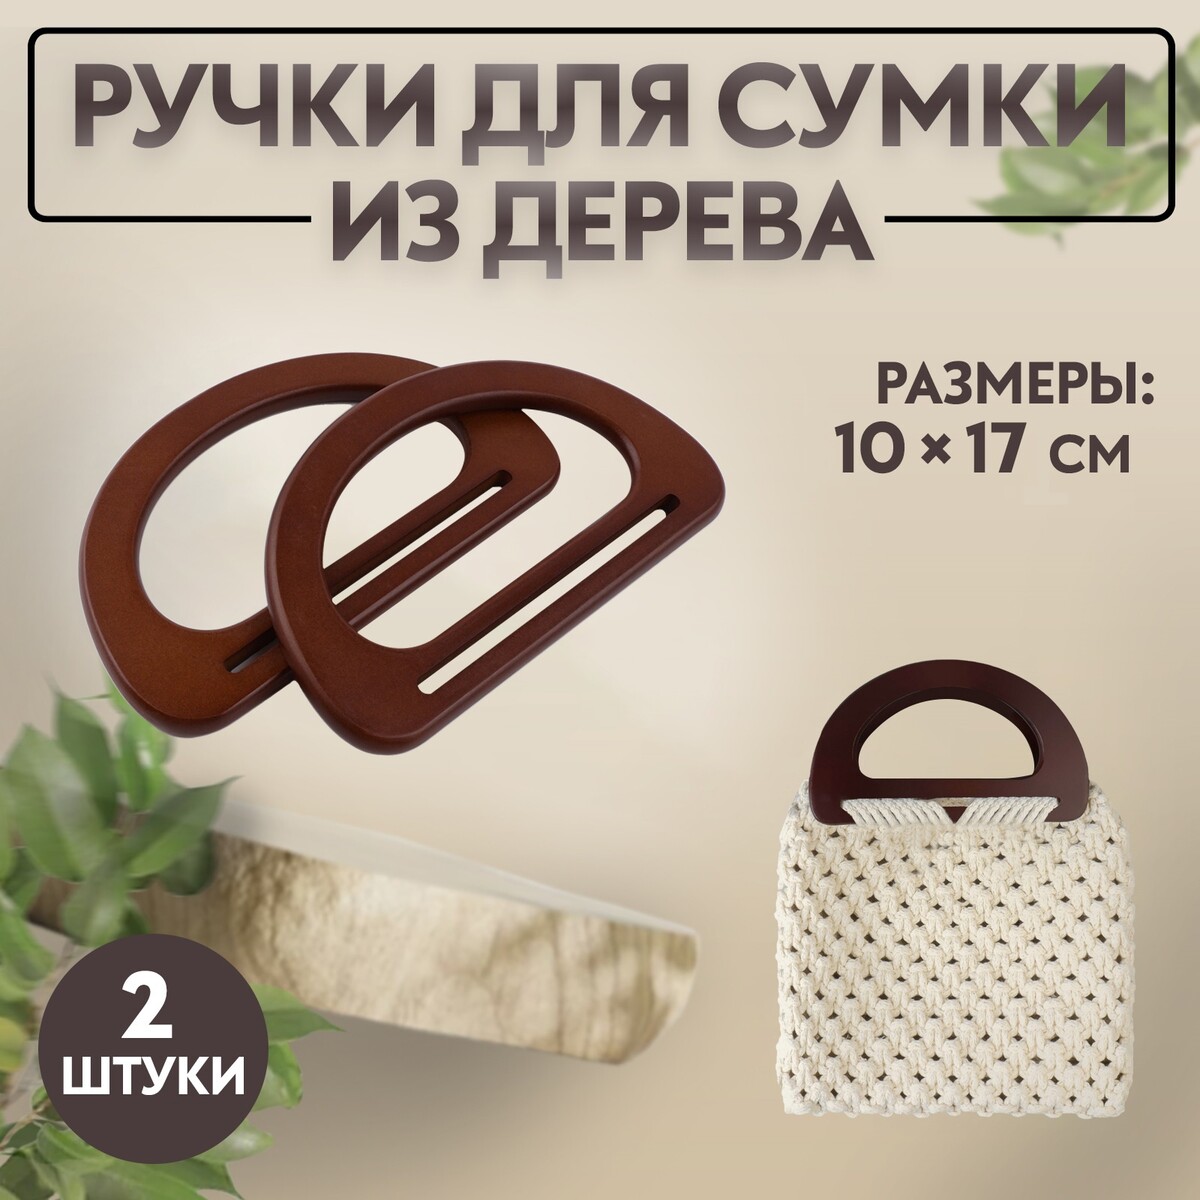 Ручки для сумки деревянные, 10 × 17 см, 2 шт, цвет темно-коричневый ручки для сумки деревянные 10 × 18 см 2 шт коричневый